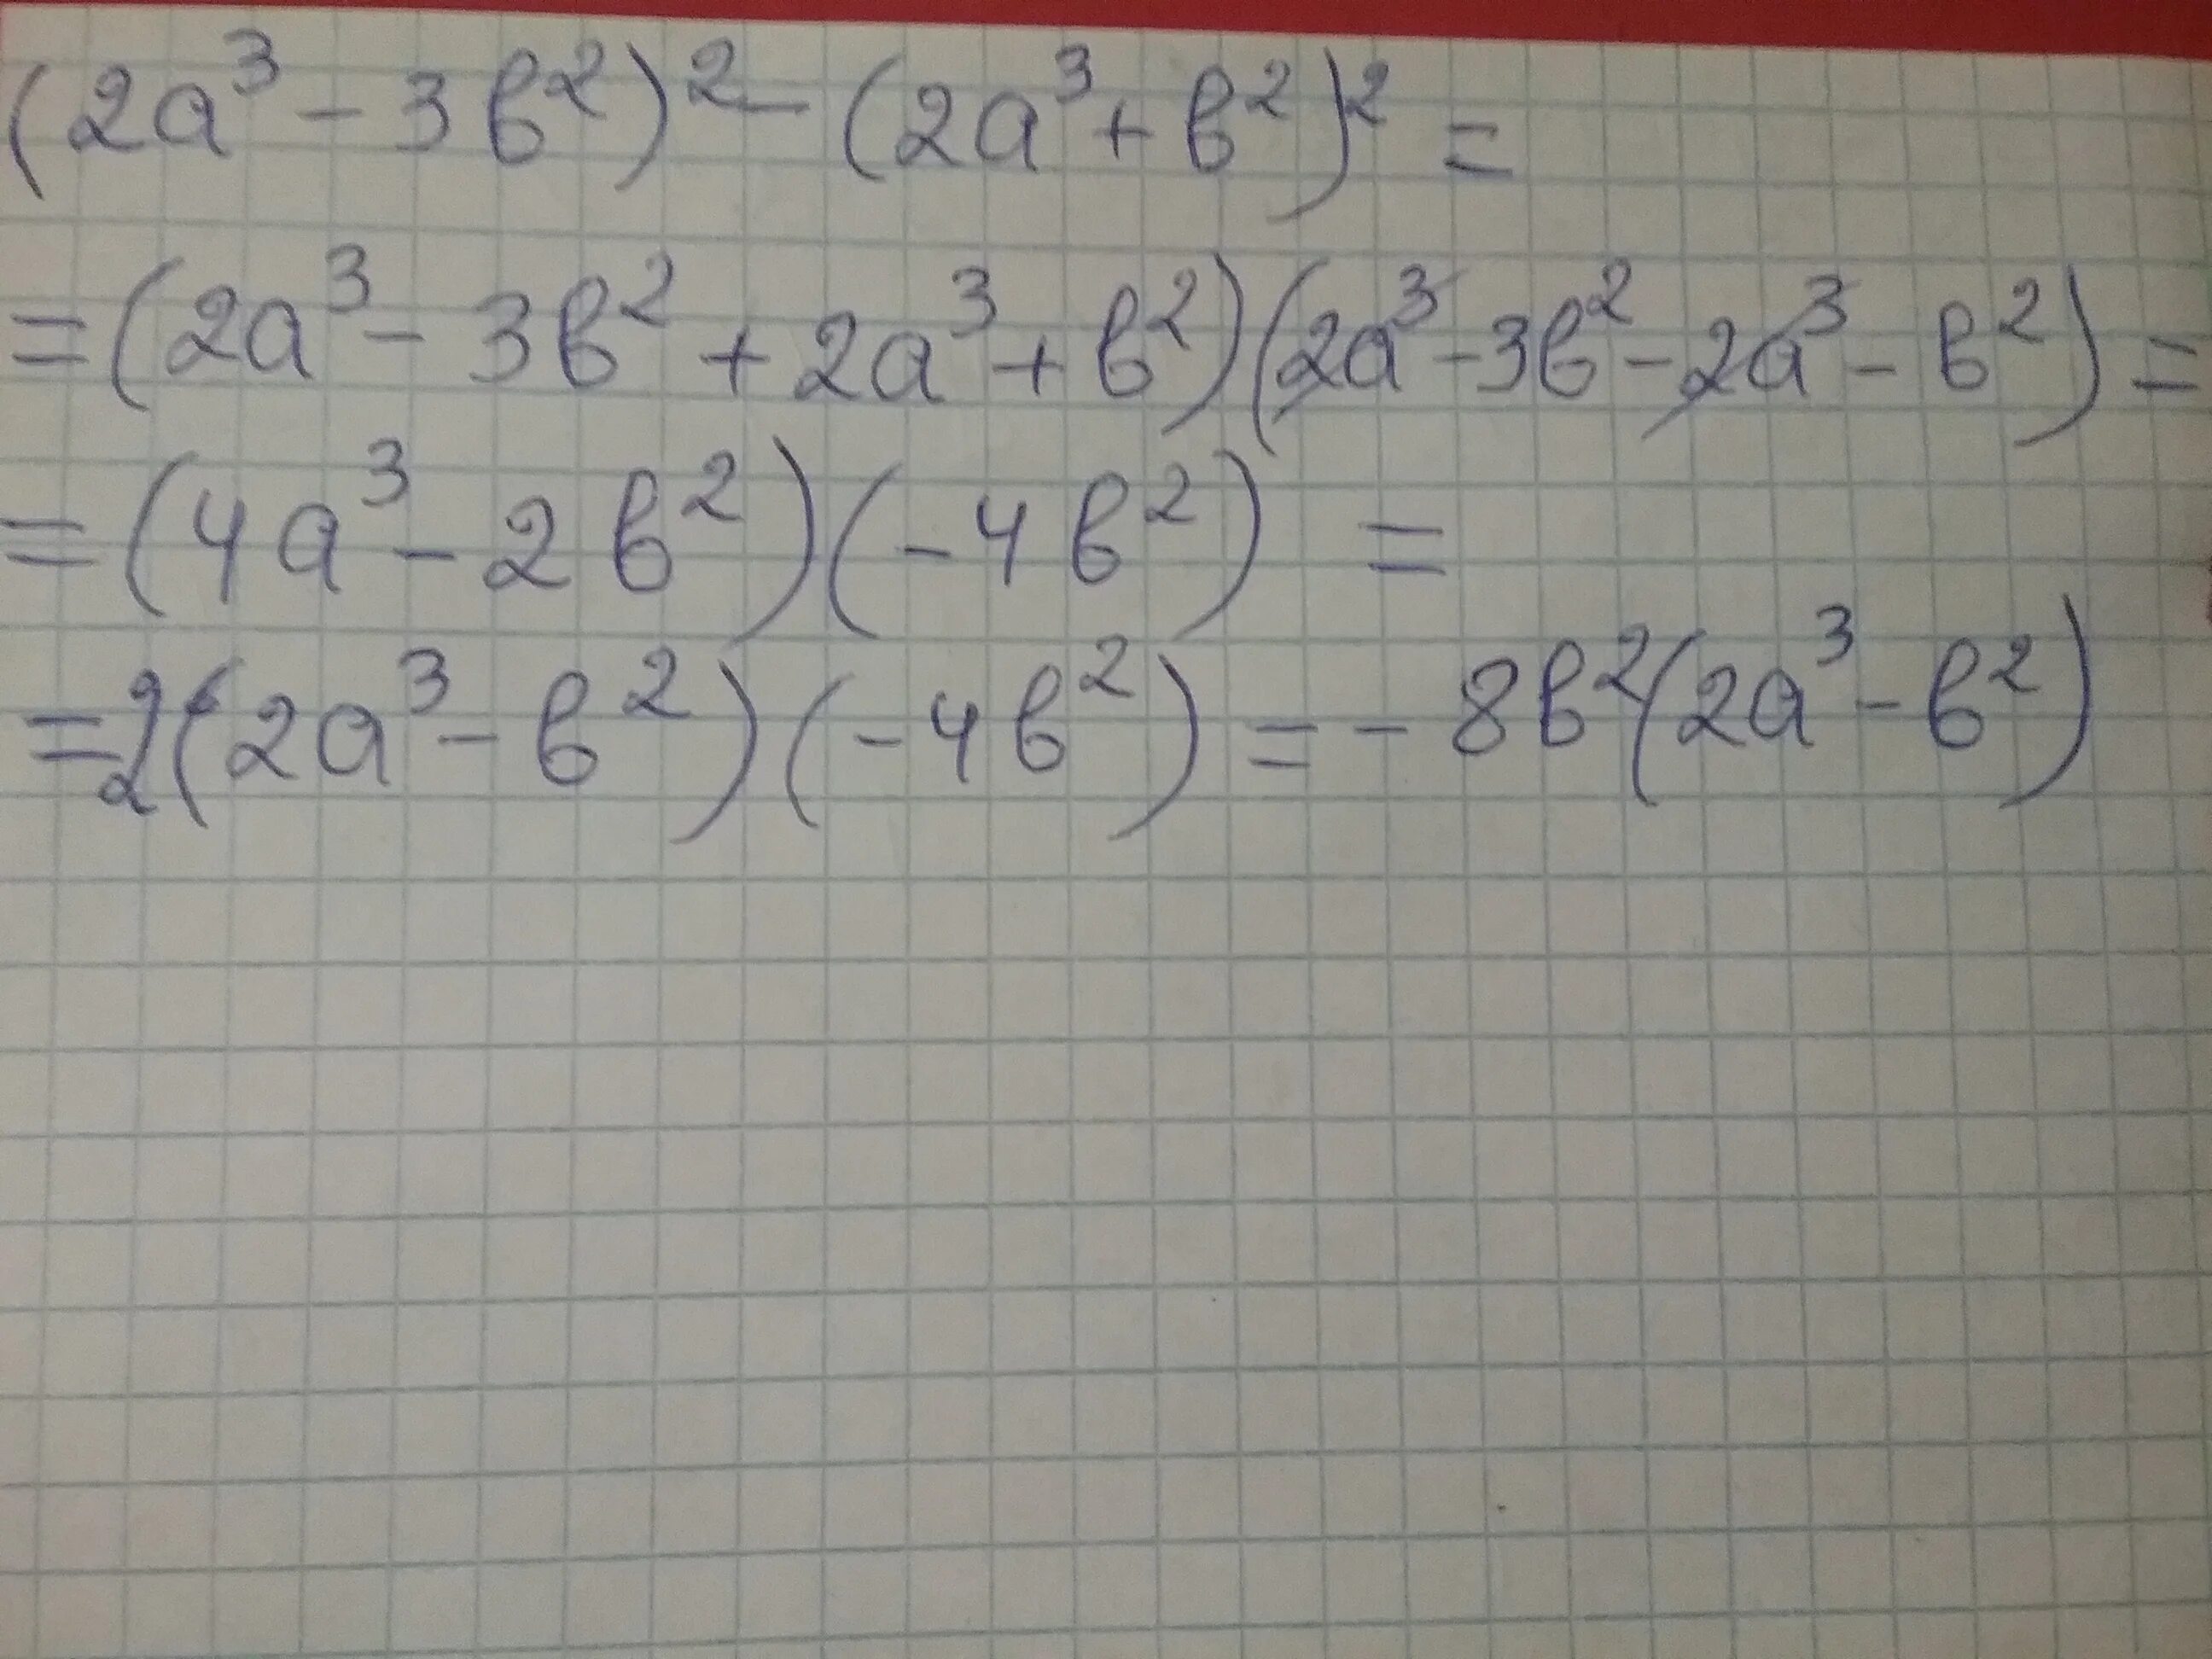 2a 2b 7 a b. (A-B)(2a+3b). 3(A+2)+B(A+2). 2a-3/2a-b-2/b. (A+B)^3/B^2-A^2.